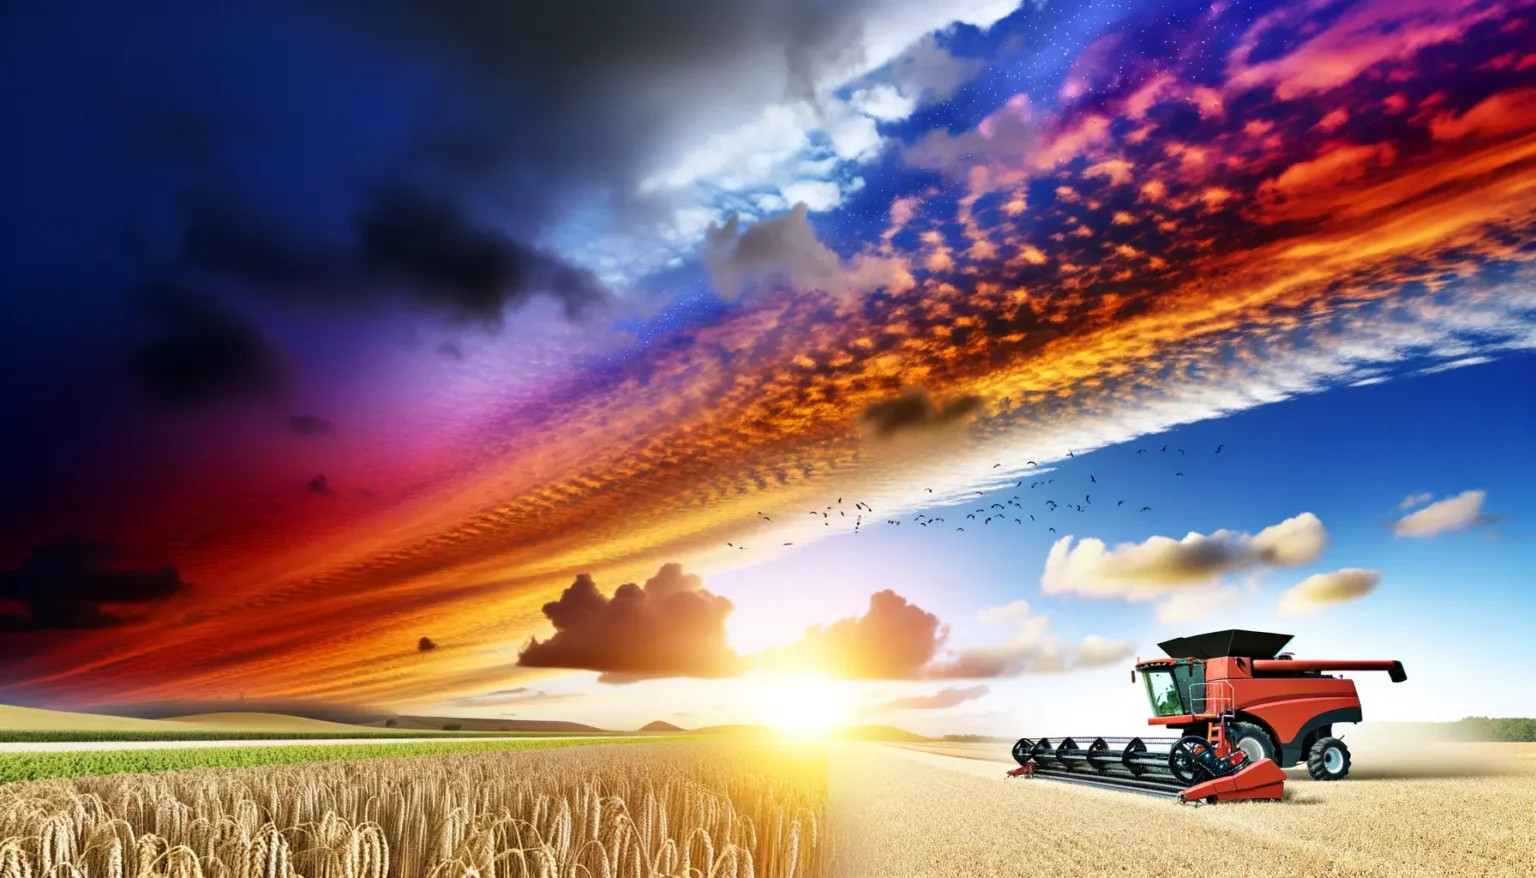 Ein landwirtschaftlicher Mähdrescher erntet Weizen auf einem Feld unter einem dramatischen Himmel mit bunten Wolken, während die Sonne untergeht und eine Vogelschar am Himmel zu sehen ist.